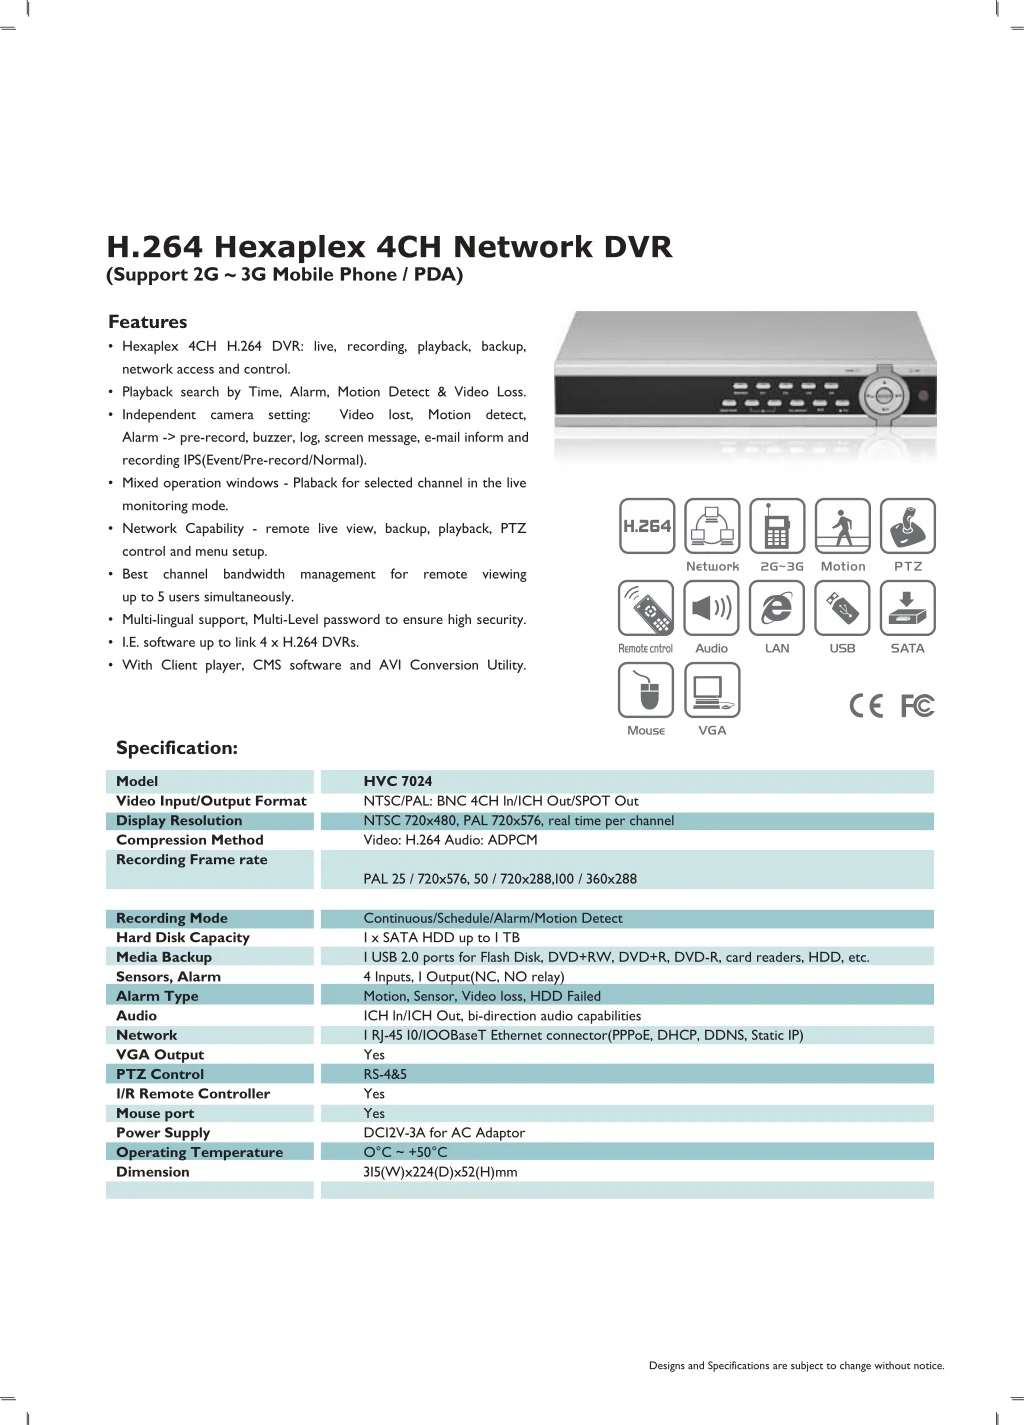 h 264 hexaplex 4ch network dvr support